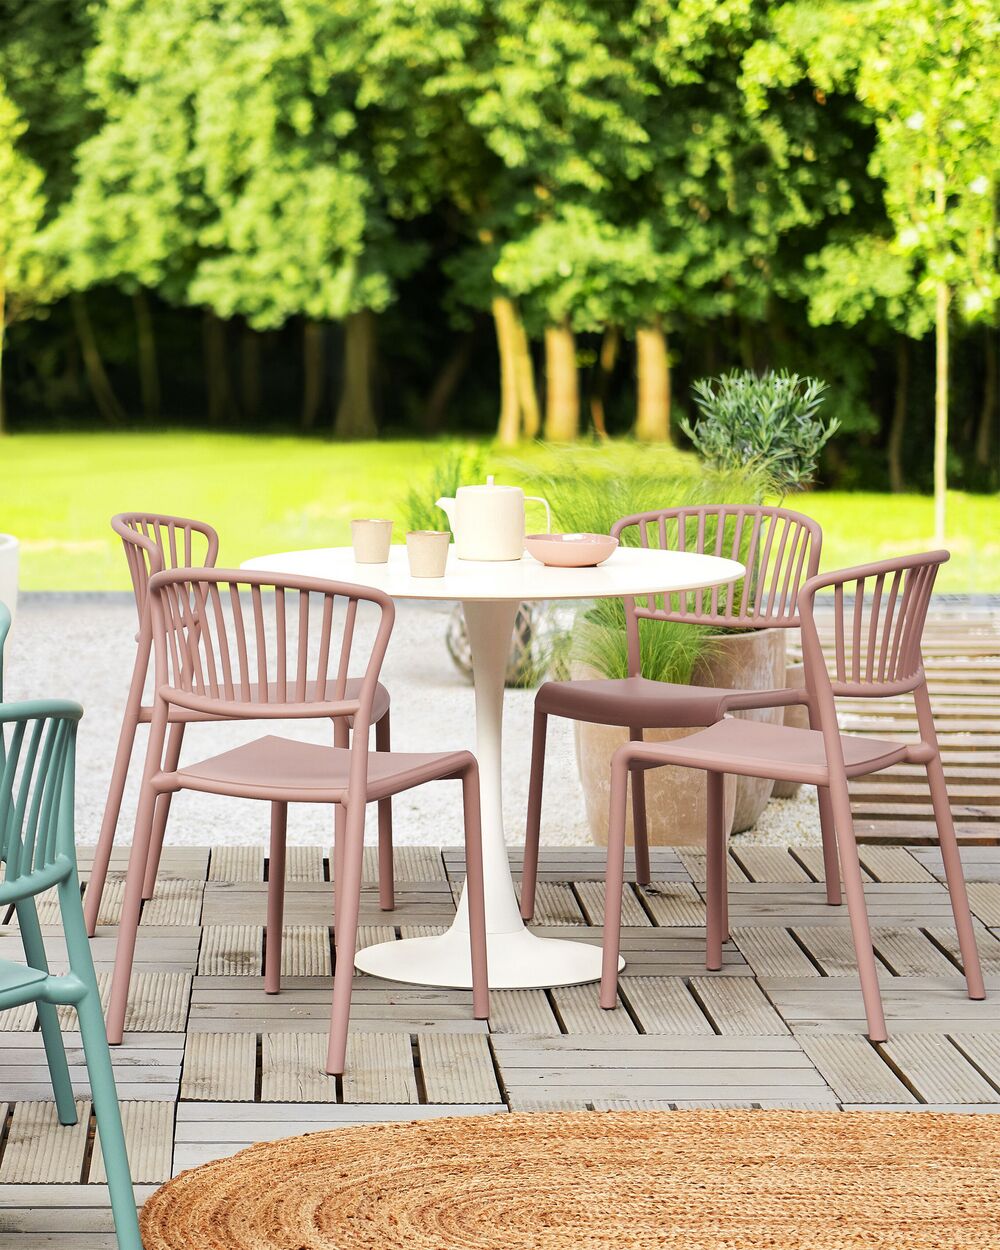 Nature Housse pour meubles de jardin pour table et chaises rondes, Finition  Gris, 6030601